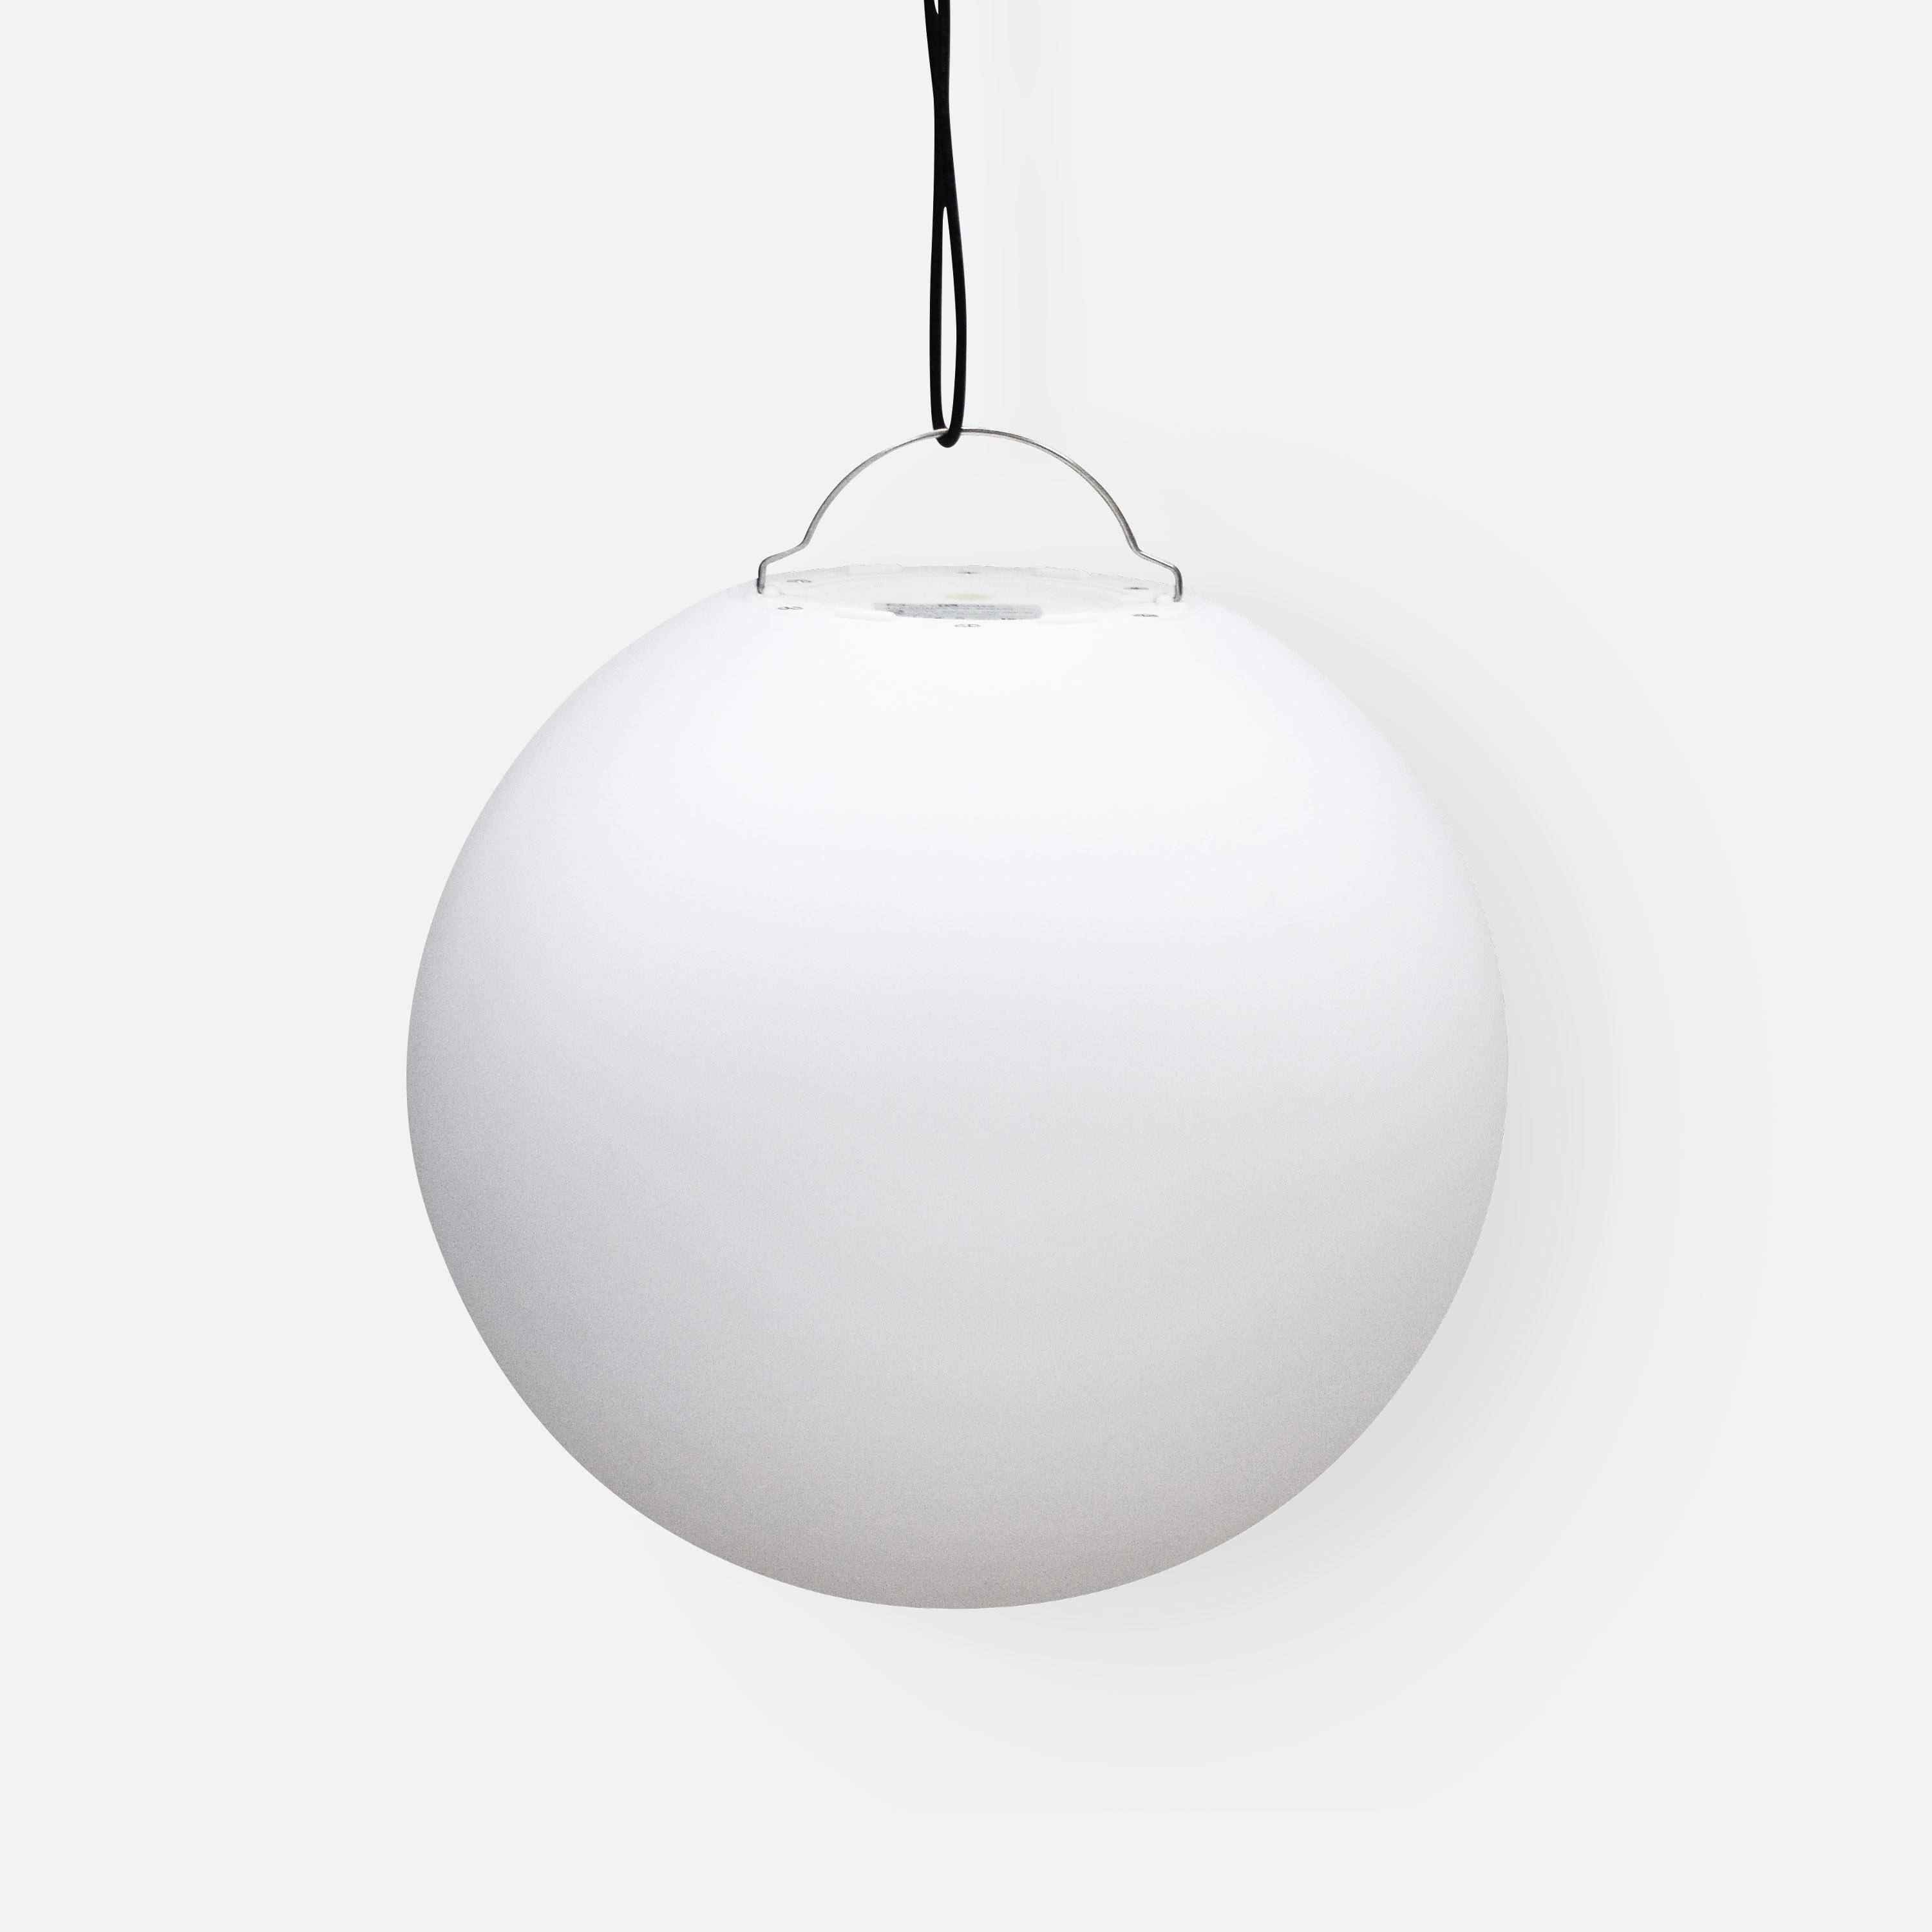 Boule LED 30cm – Sphère décorative lumineuse, Ø30cm, blanc chaud, commande à distance,sweeek,Photo4